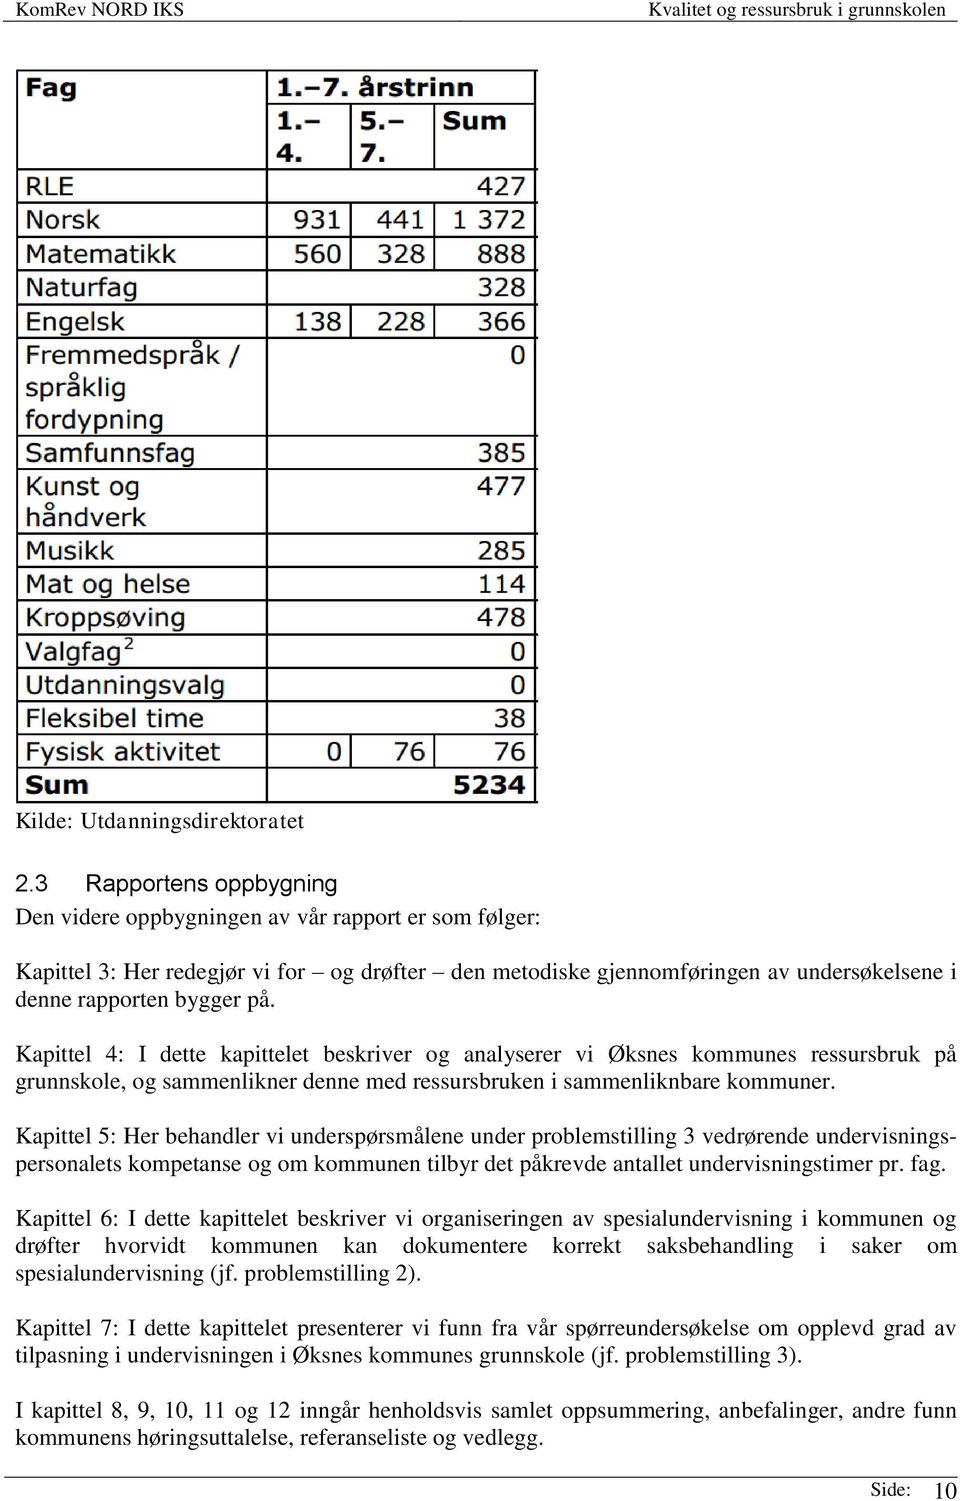 Kapittel 4: I dette kapittelet beskriver og analyserer vi Øksnes kommunes ressursbruk på grunnskole, og sammenlikner denne med ressursbruken i sammenliknbare kommuner.